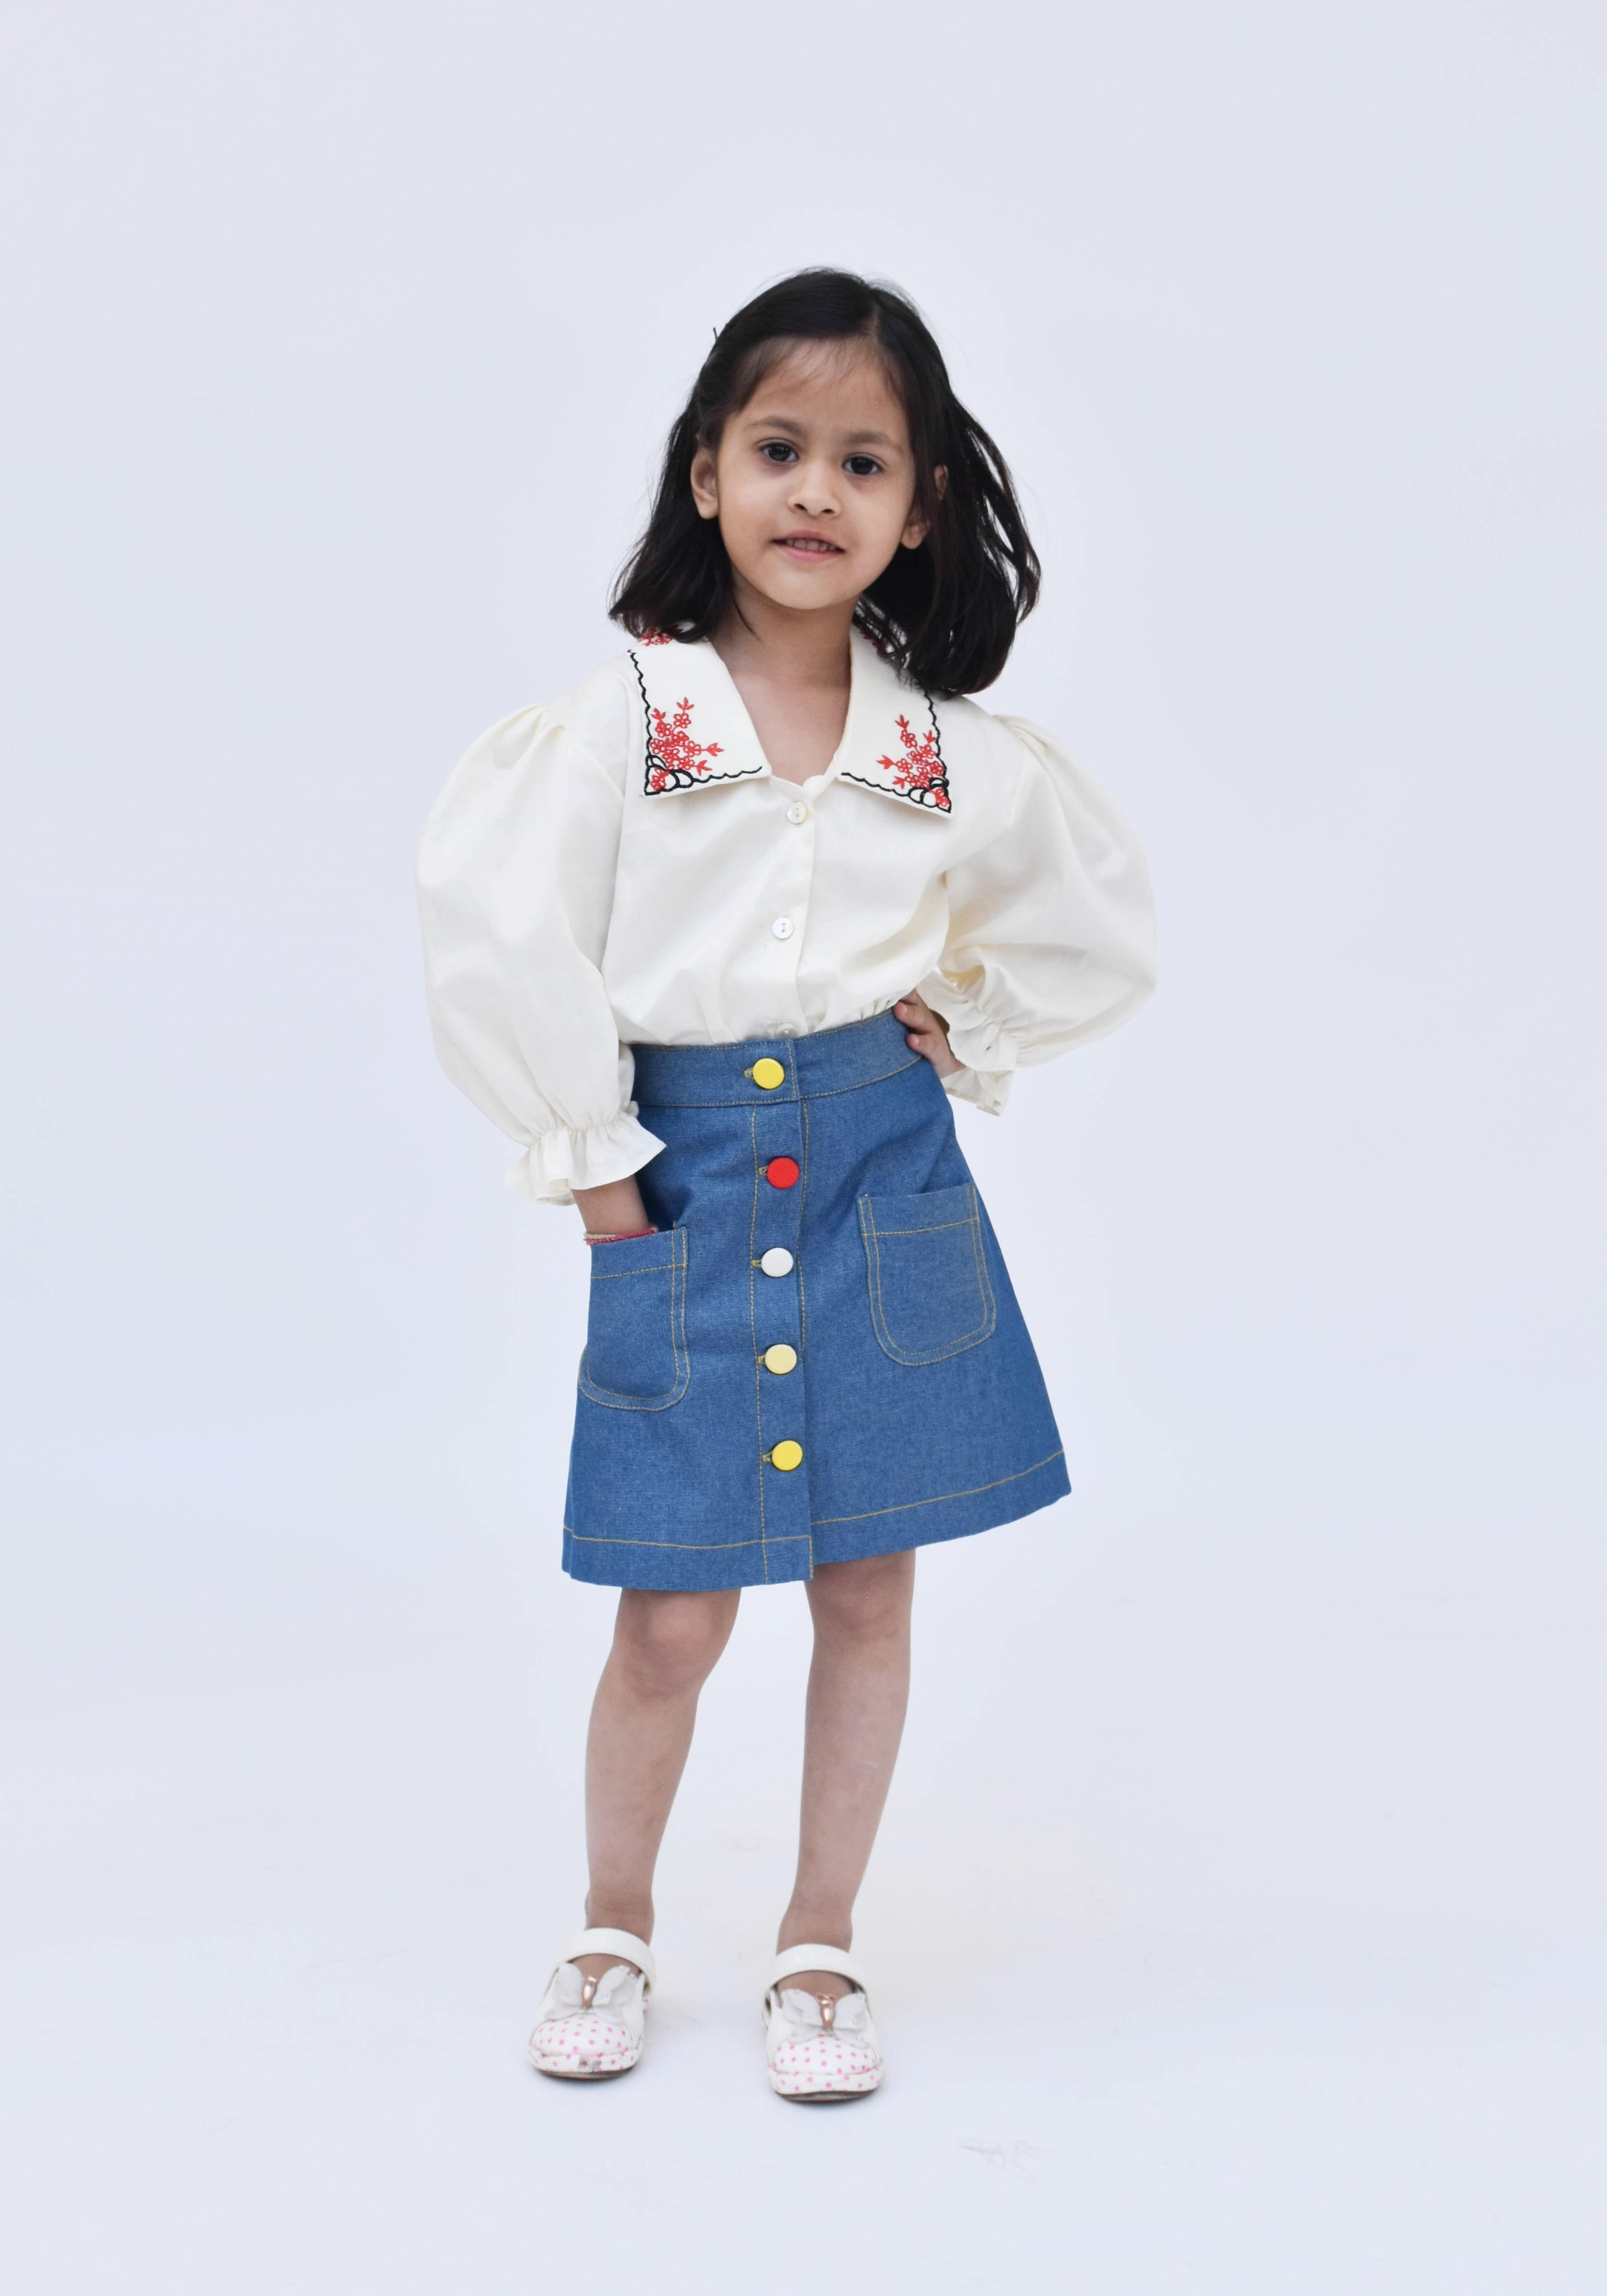 Denim Skirt - Buy Denim Skirt online in India